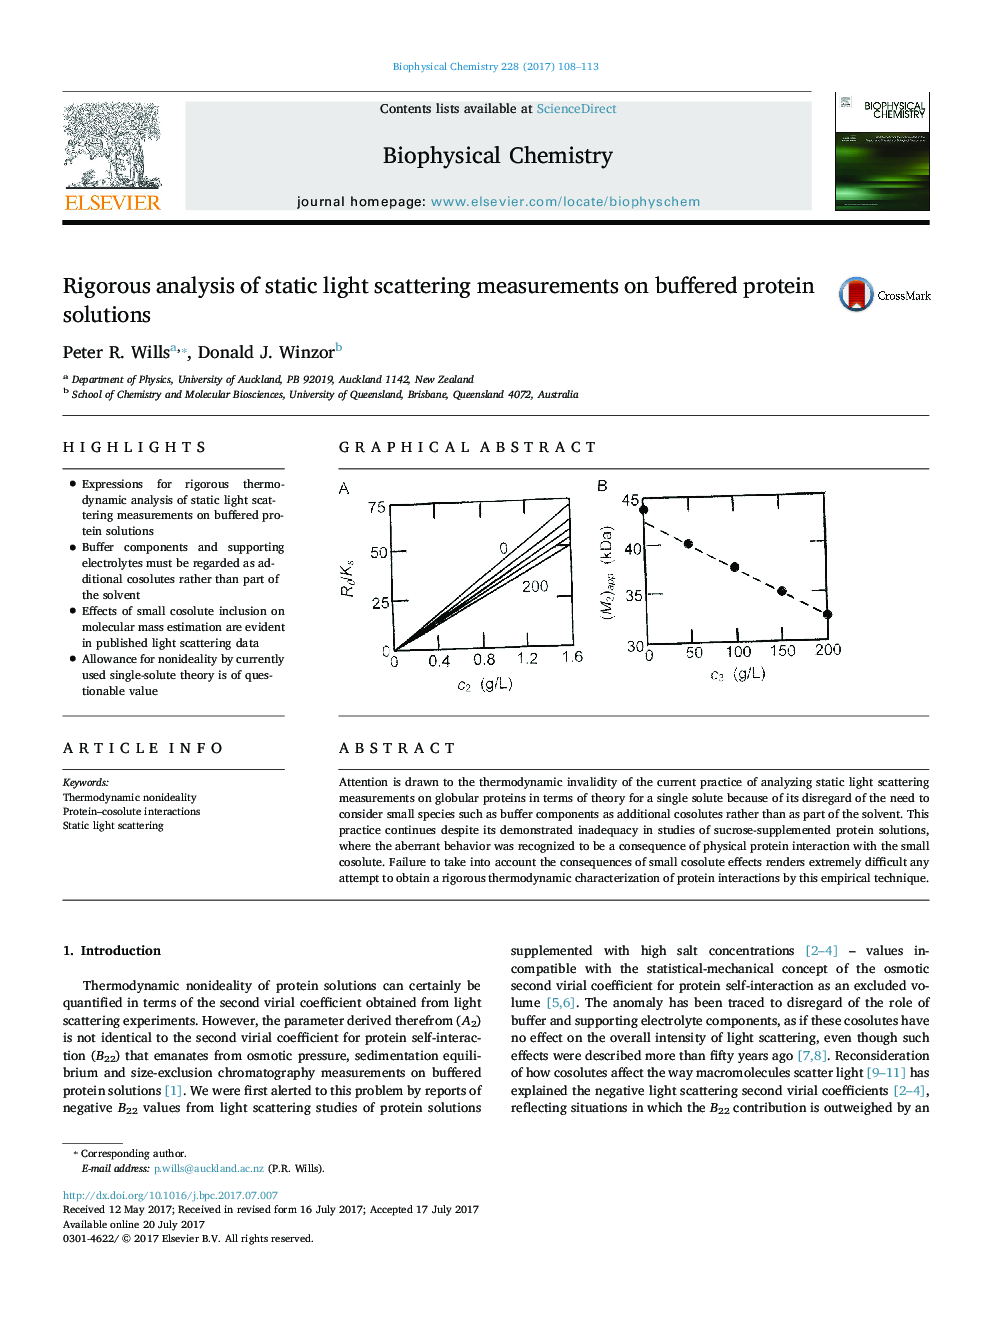 تجزیه و تحلیل دقیق از اندازه گیری پراکندگی نور استاتیک در محلول پروتئین بافر 